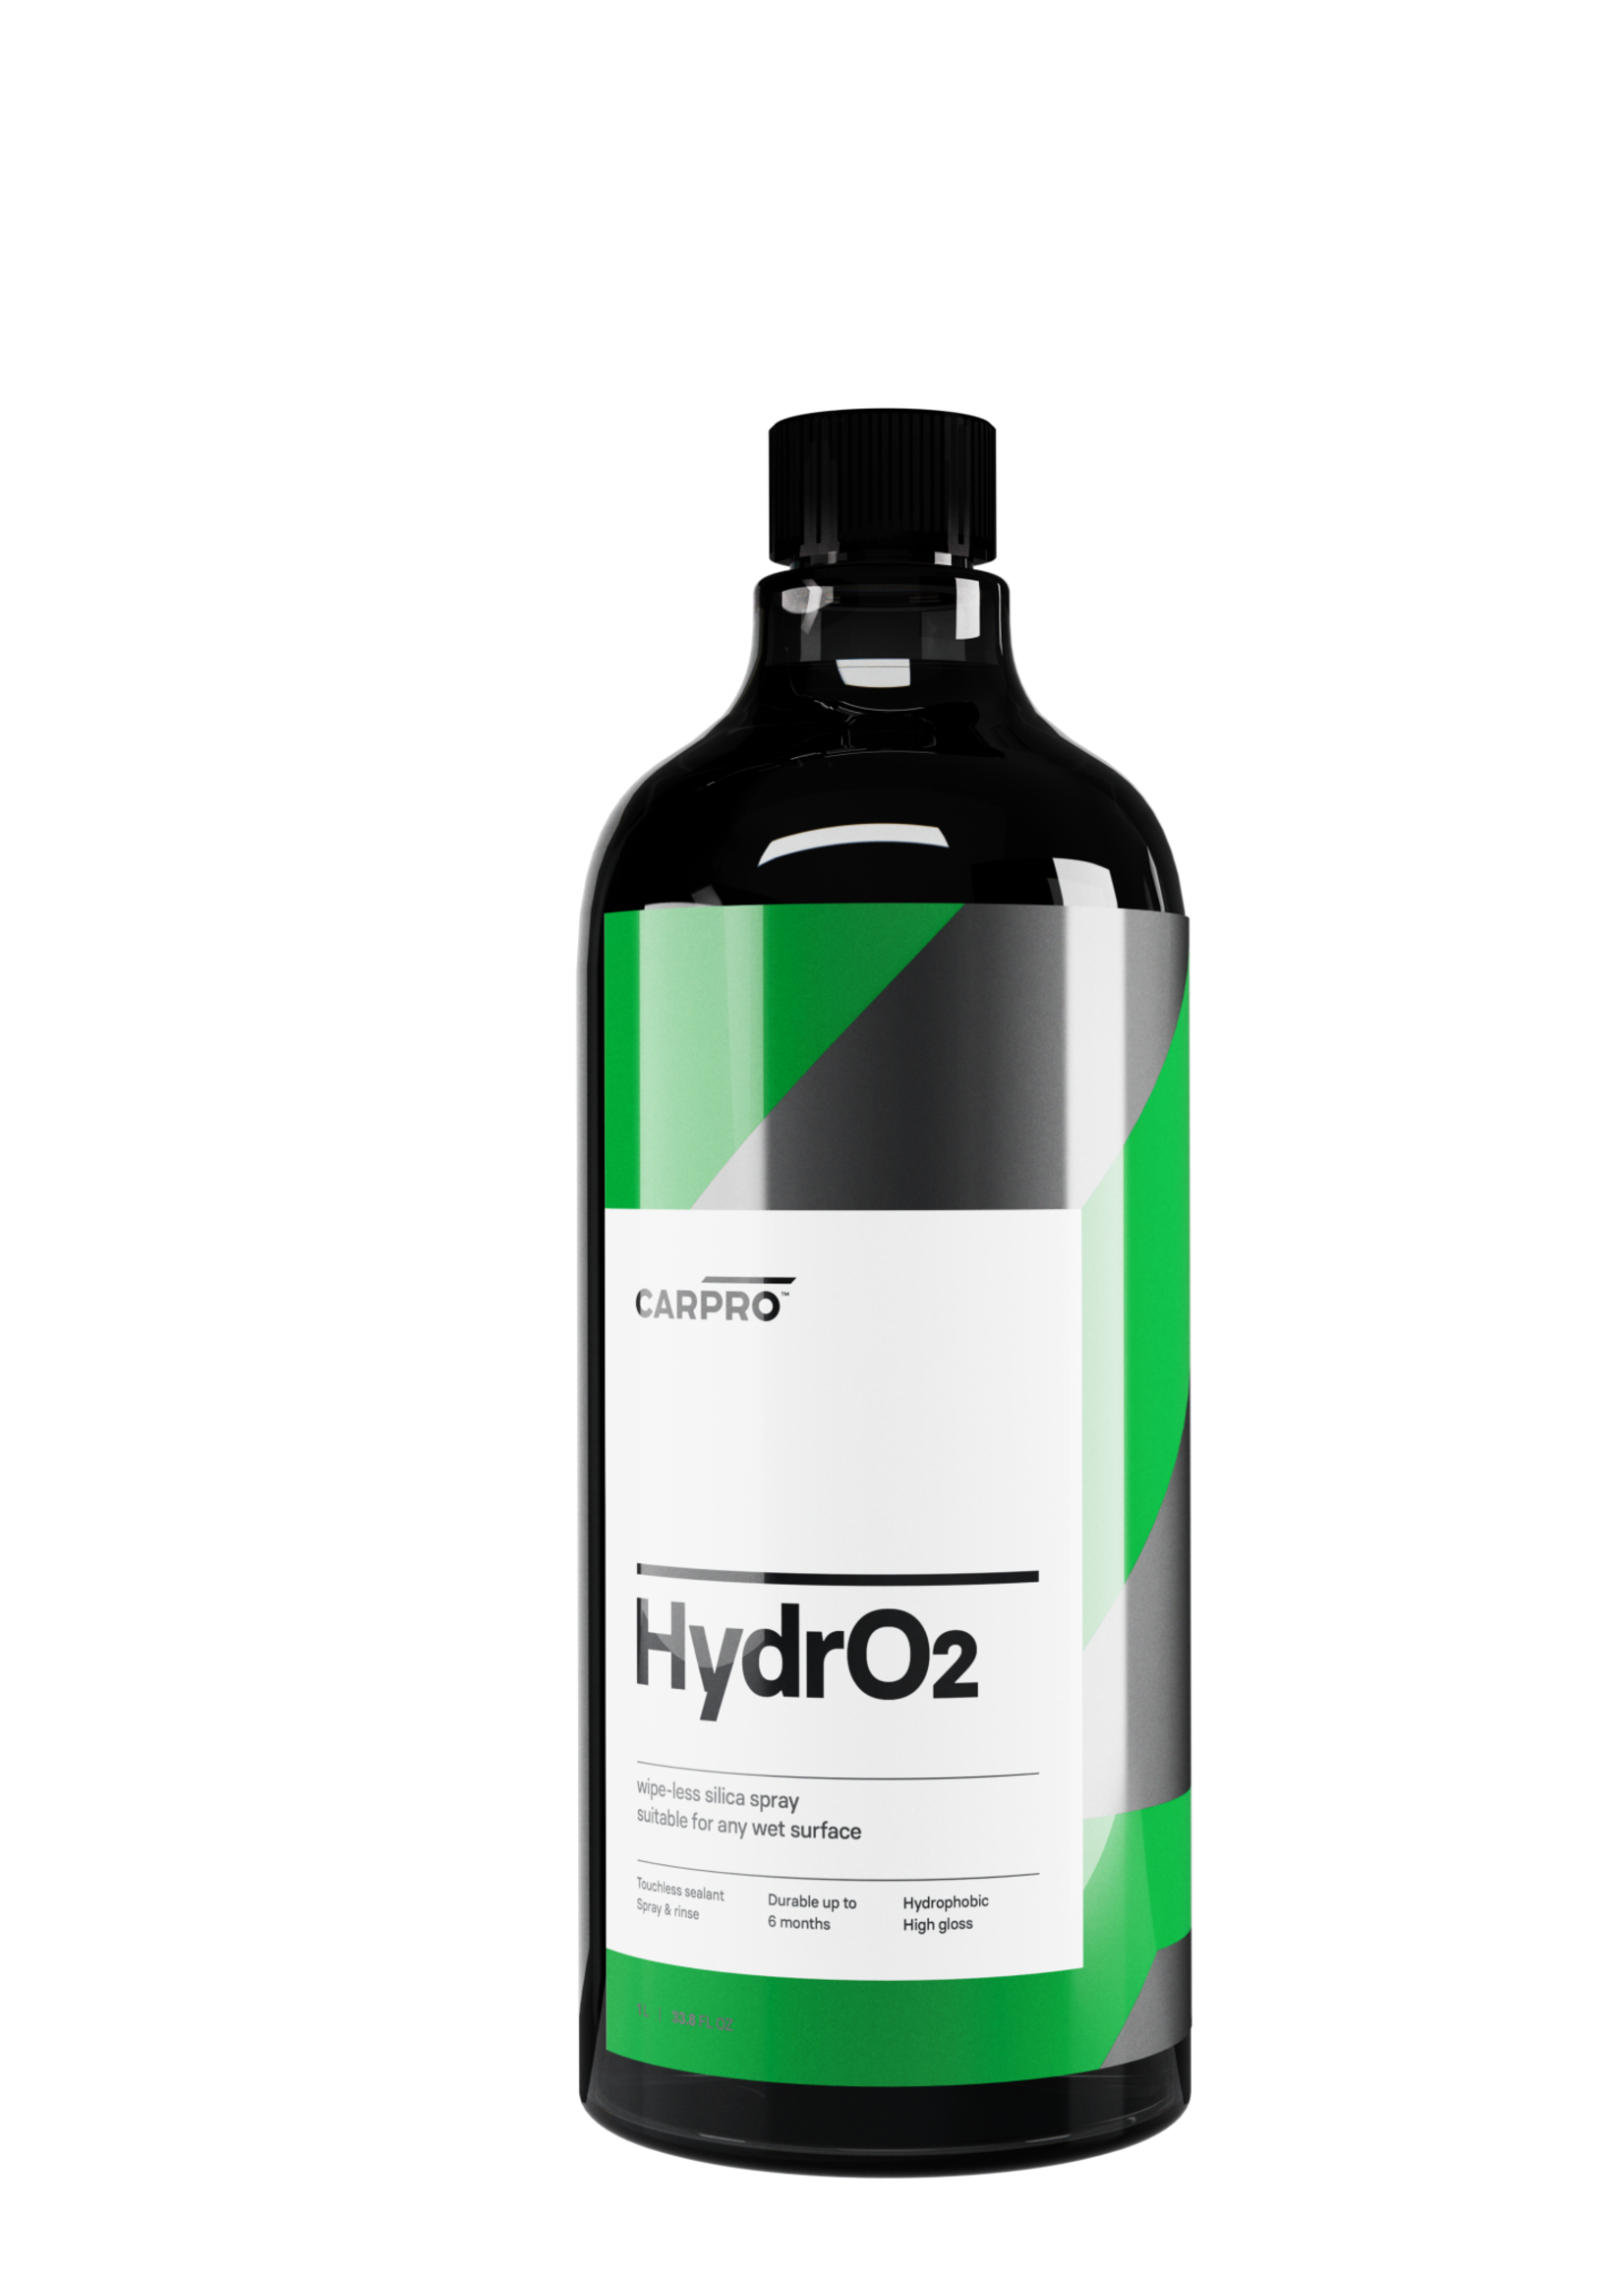 CARPRO HydrO2 Silica Sealant Concentrate